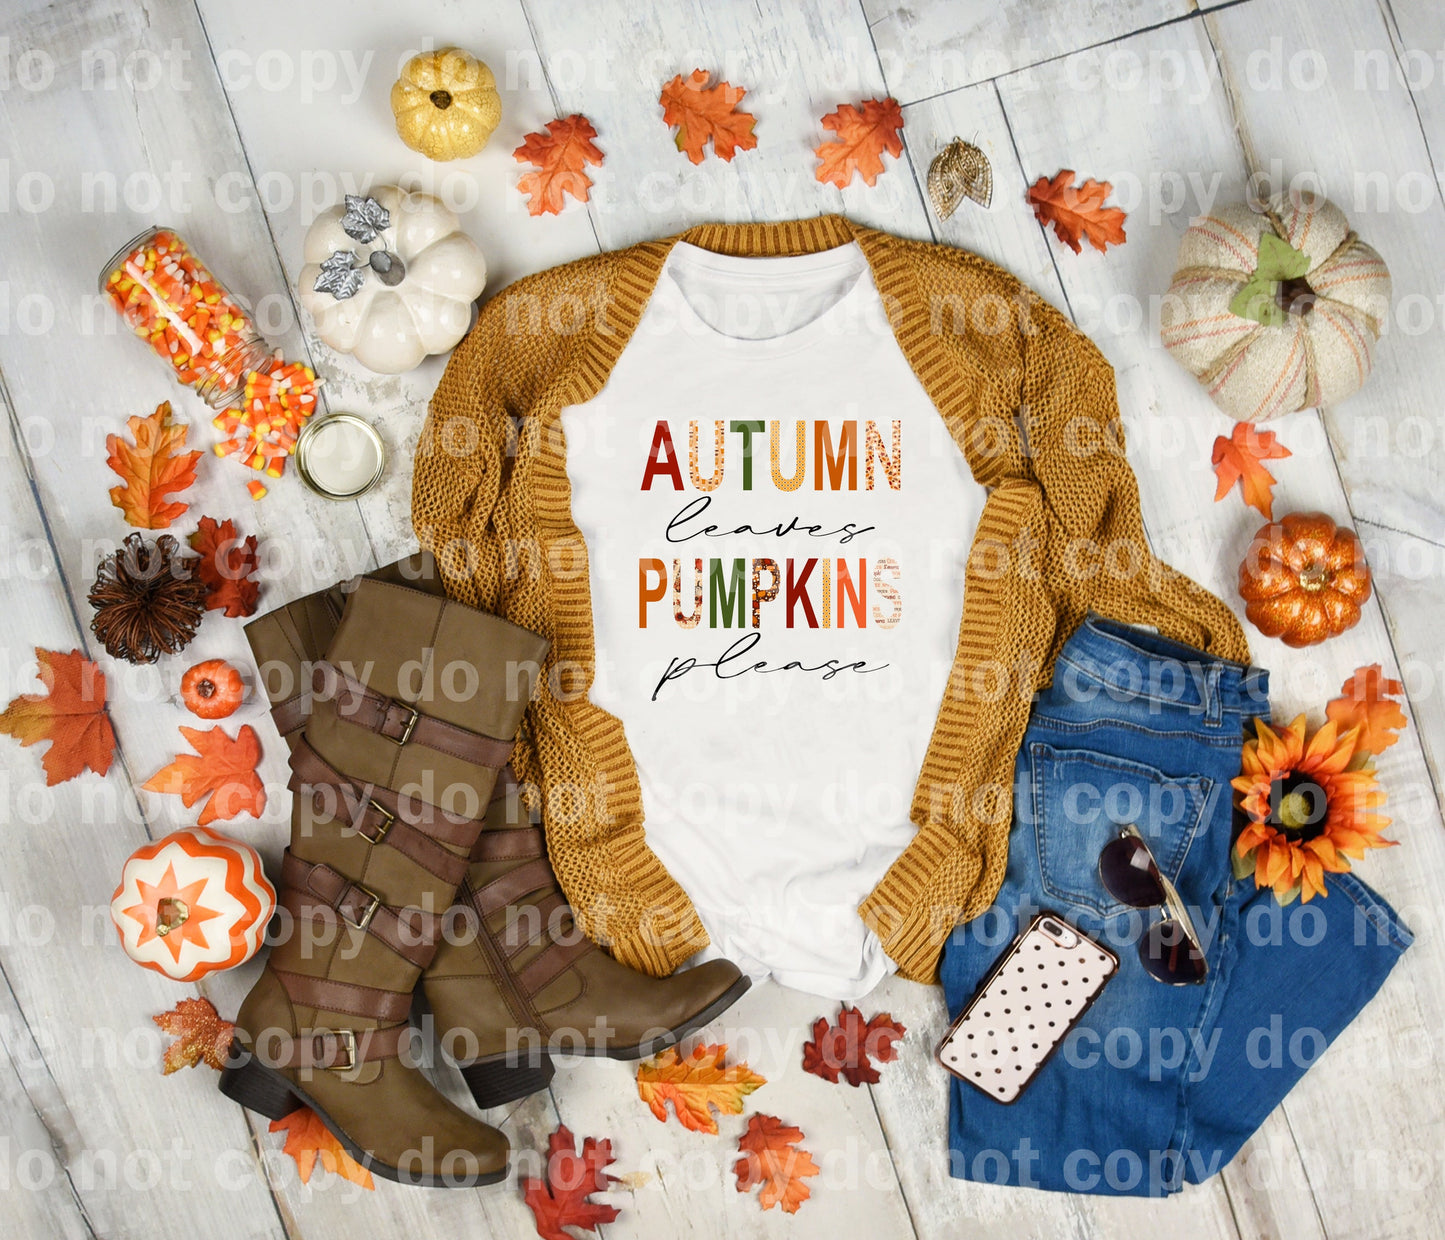 Autumn Leaves Pumpkins Please Dream Print or Sublimation Print